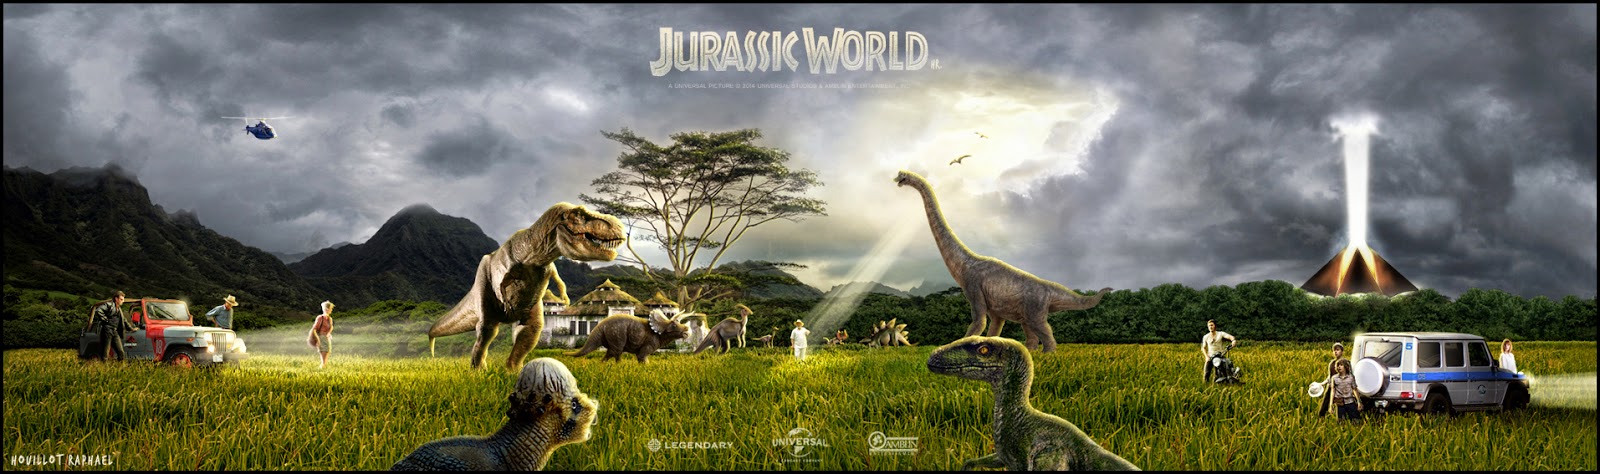 Hồi hộp xem thế giới khủng long trong “Công viên kỷ Jura 4“ - 1